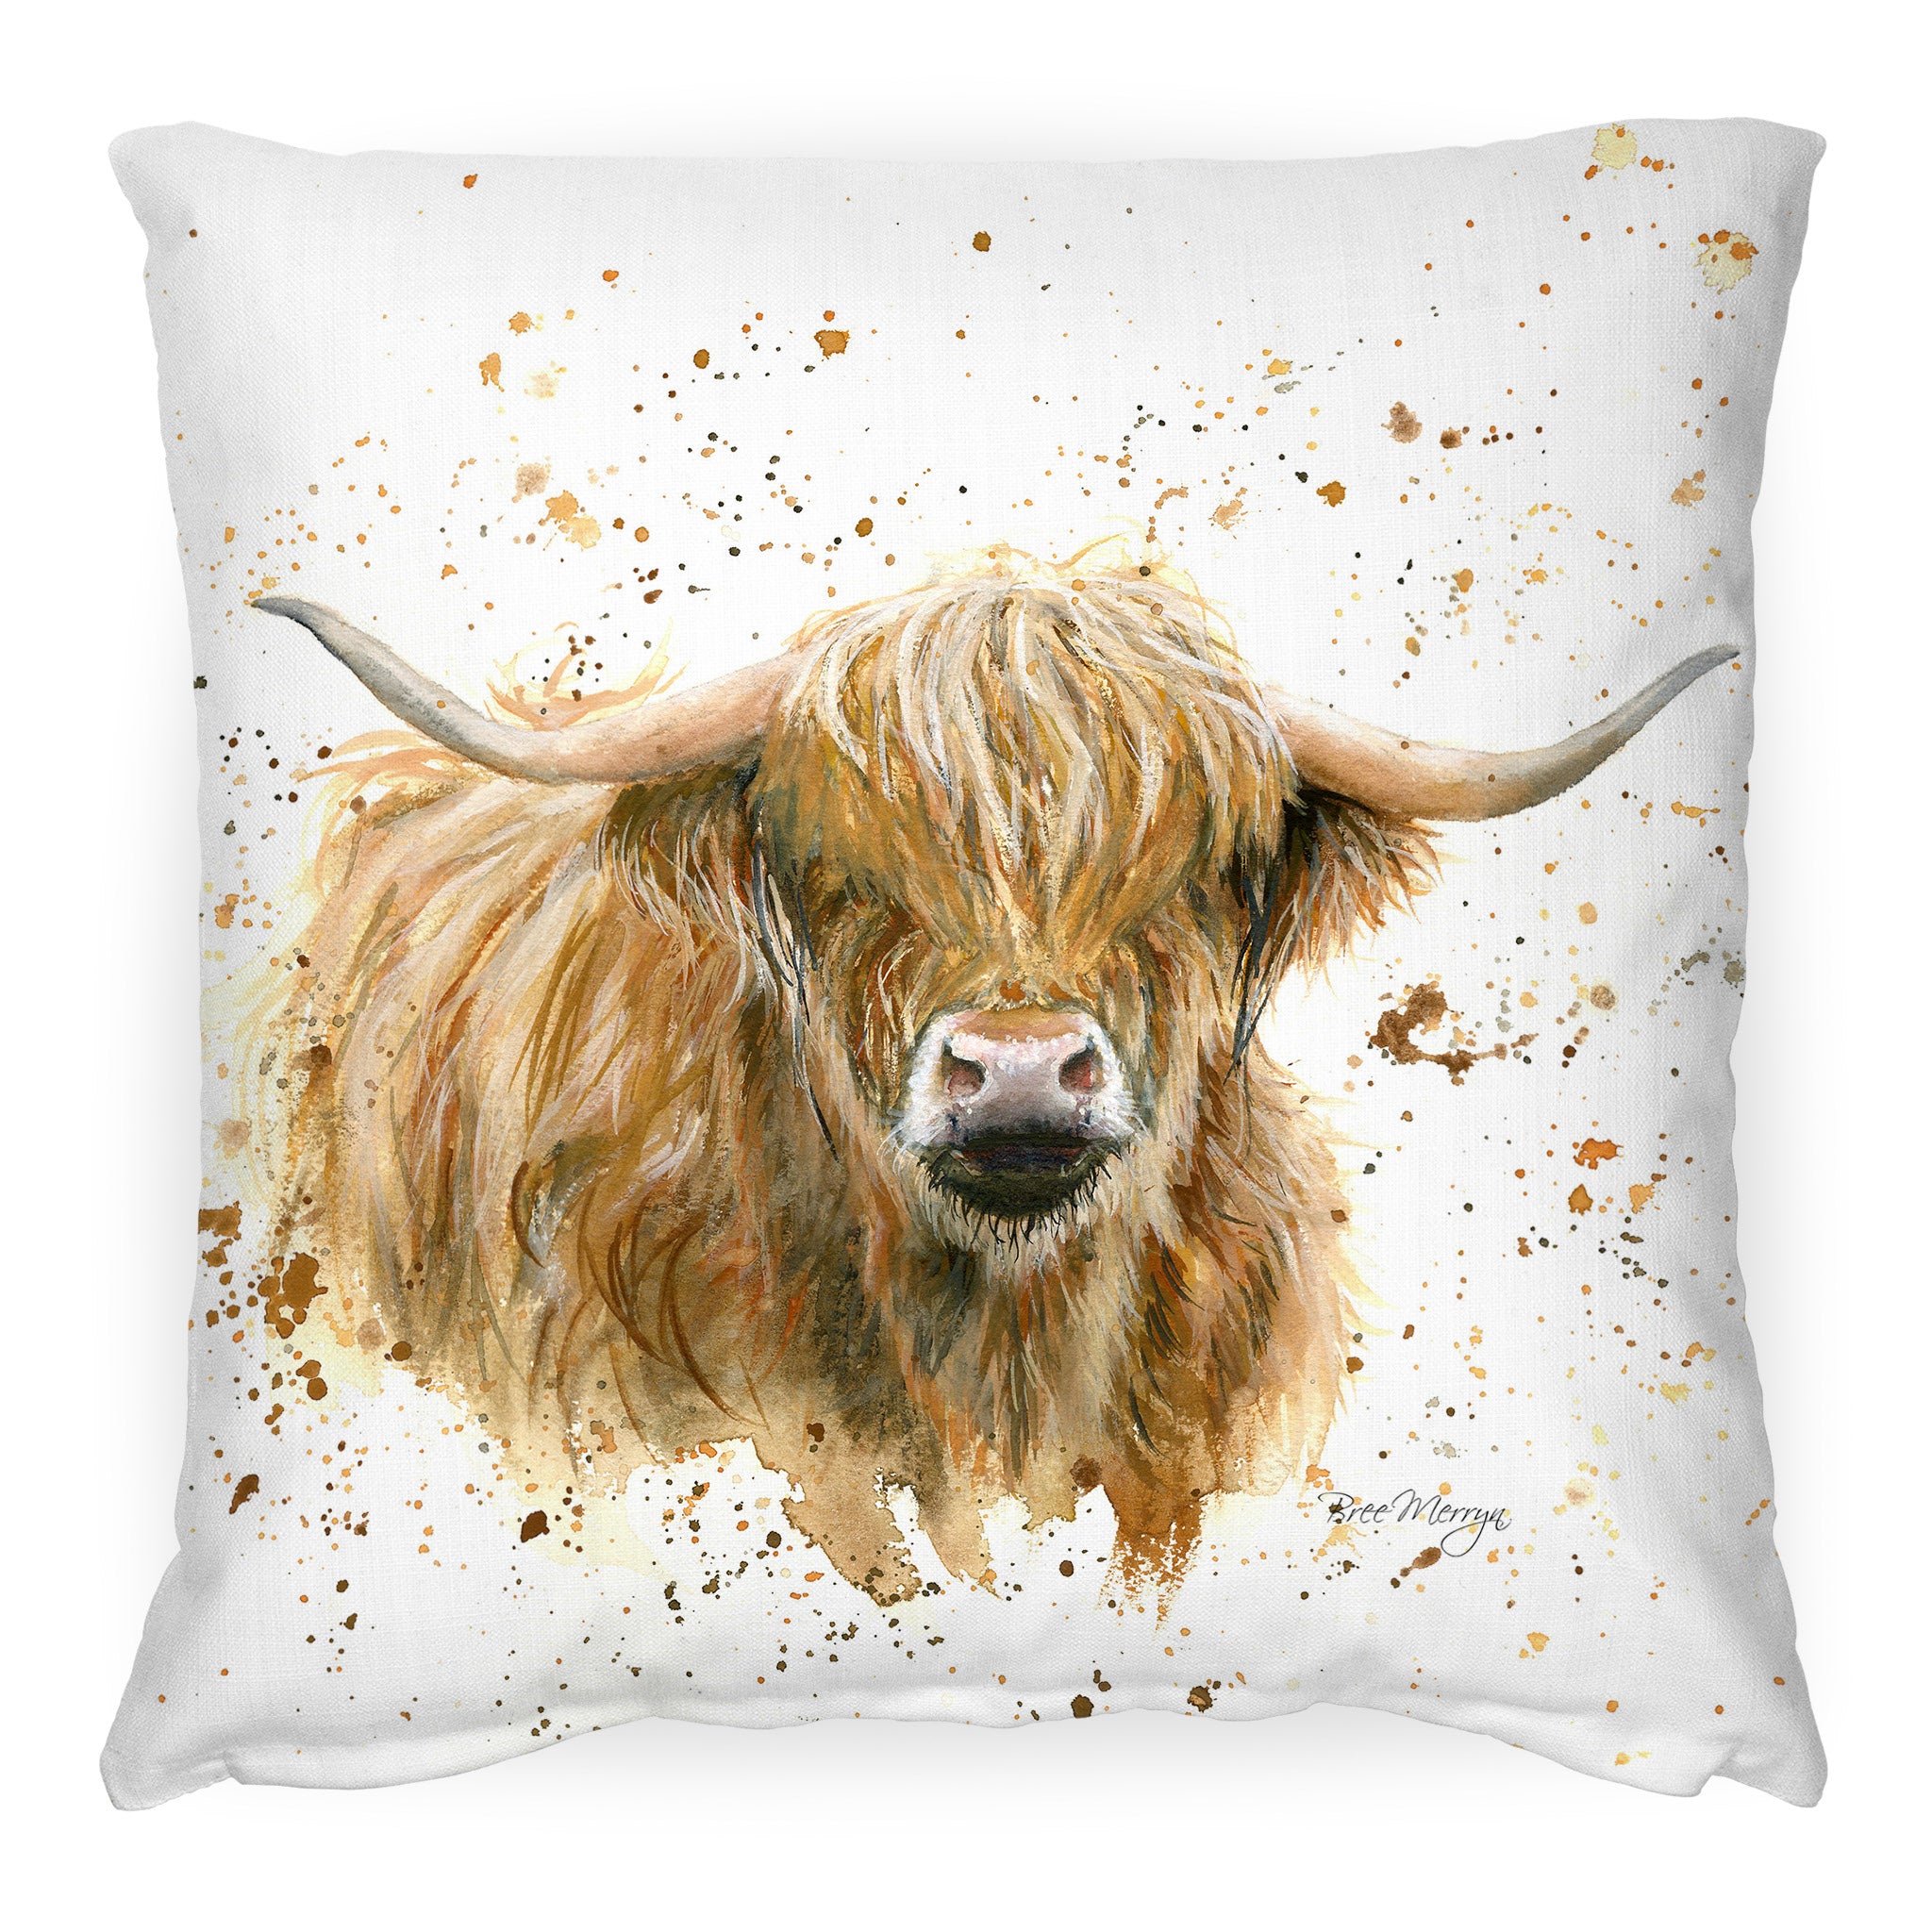 Blair Highland Cow Luxury Cushion By Bree Merryn - A Bentley Cushions